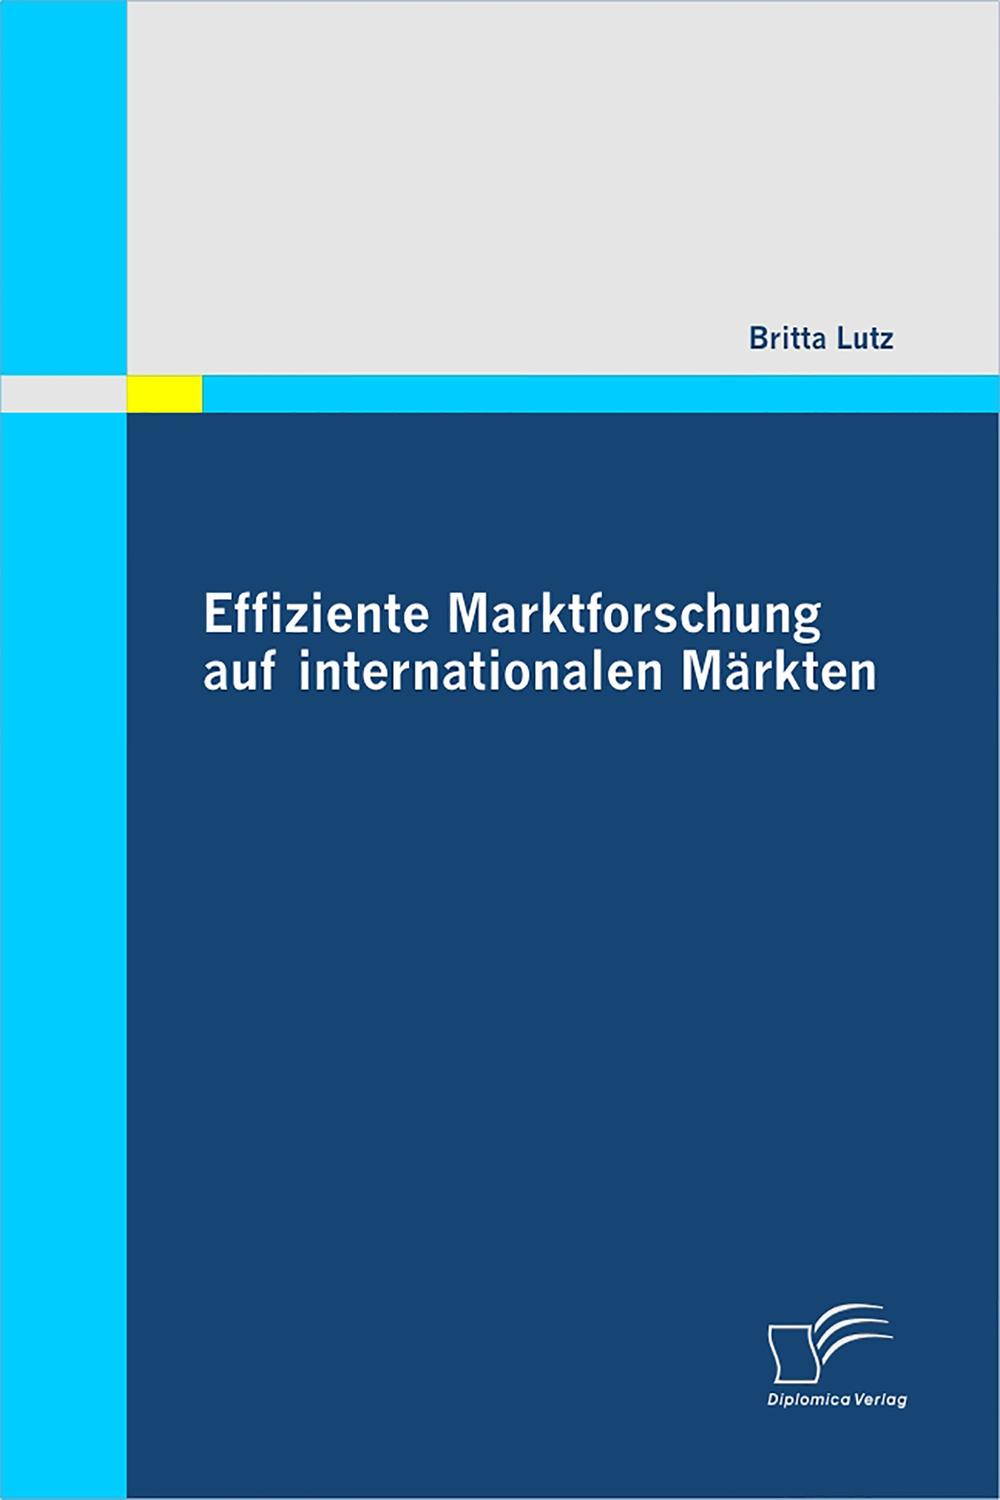 Effiziente Marktforschung auf internationalen Märkten - Britta Lutz